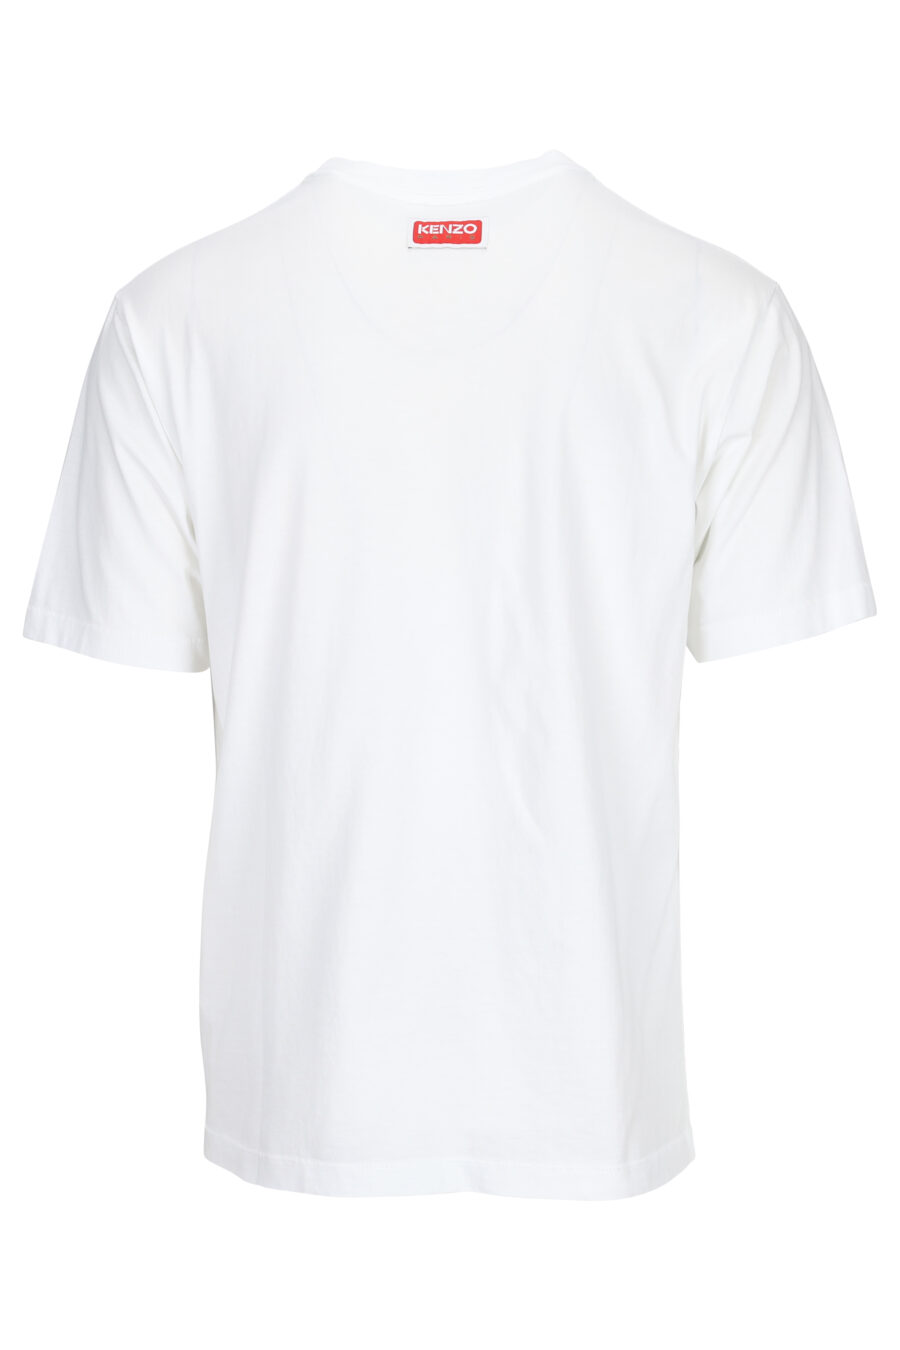 Weißes T-Shirt mit Elefantenminilogie - 3612230553590 1